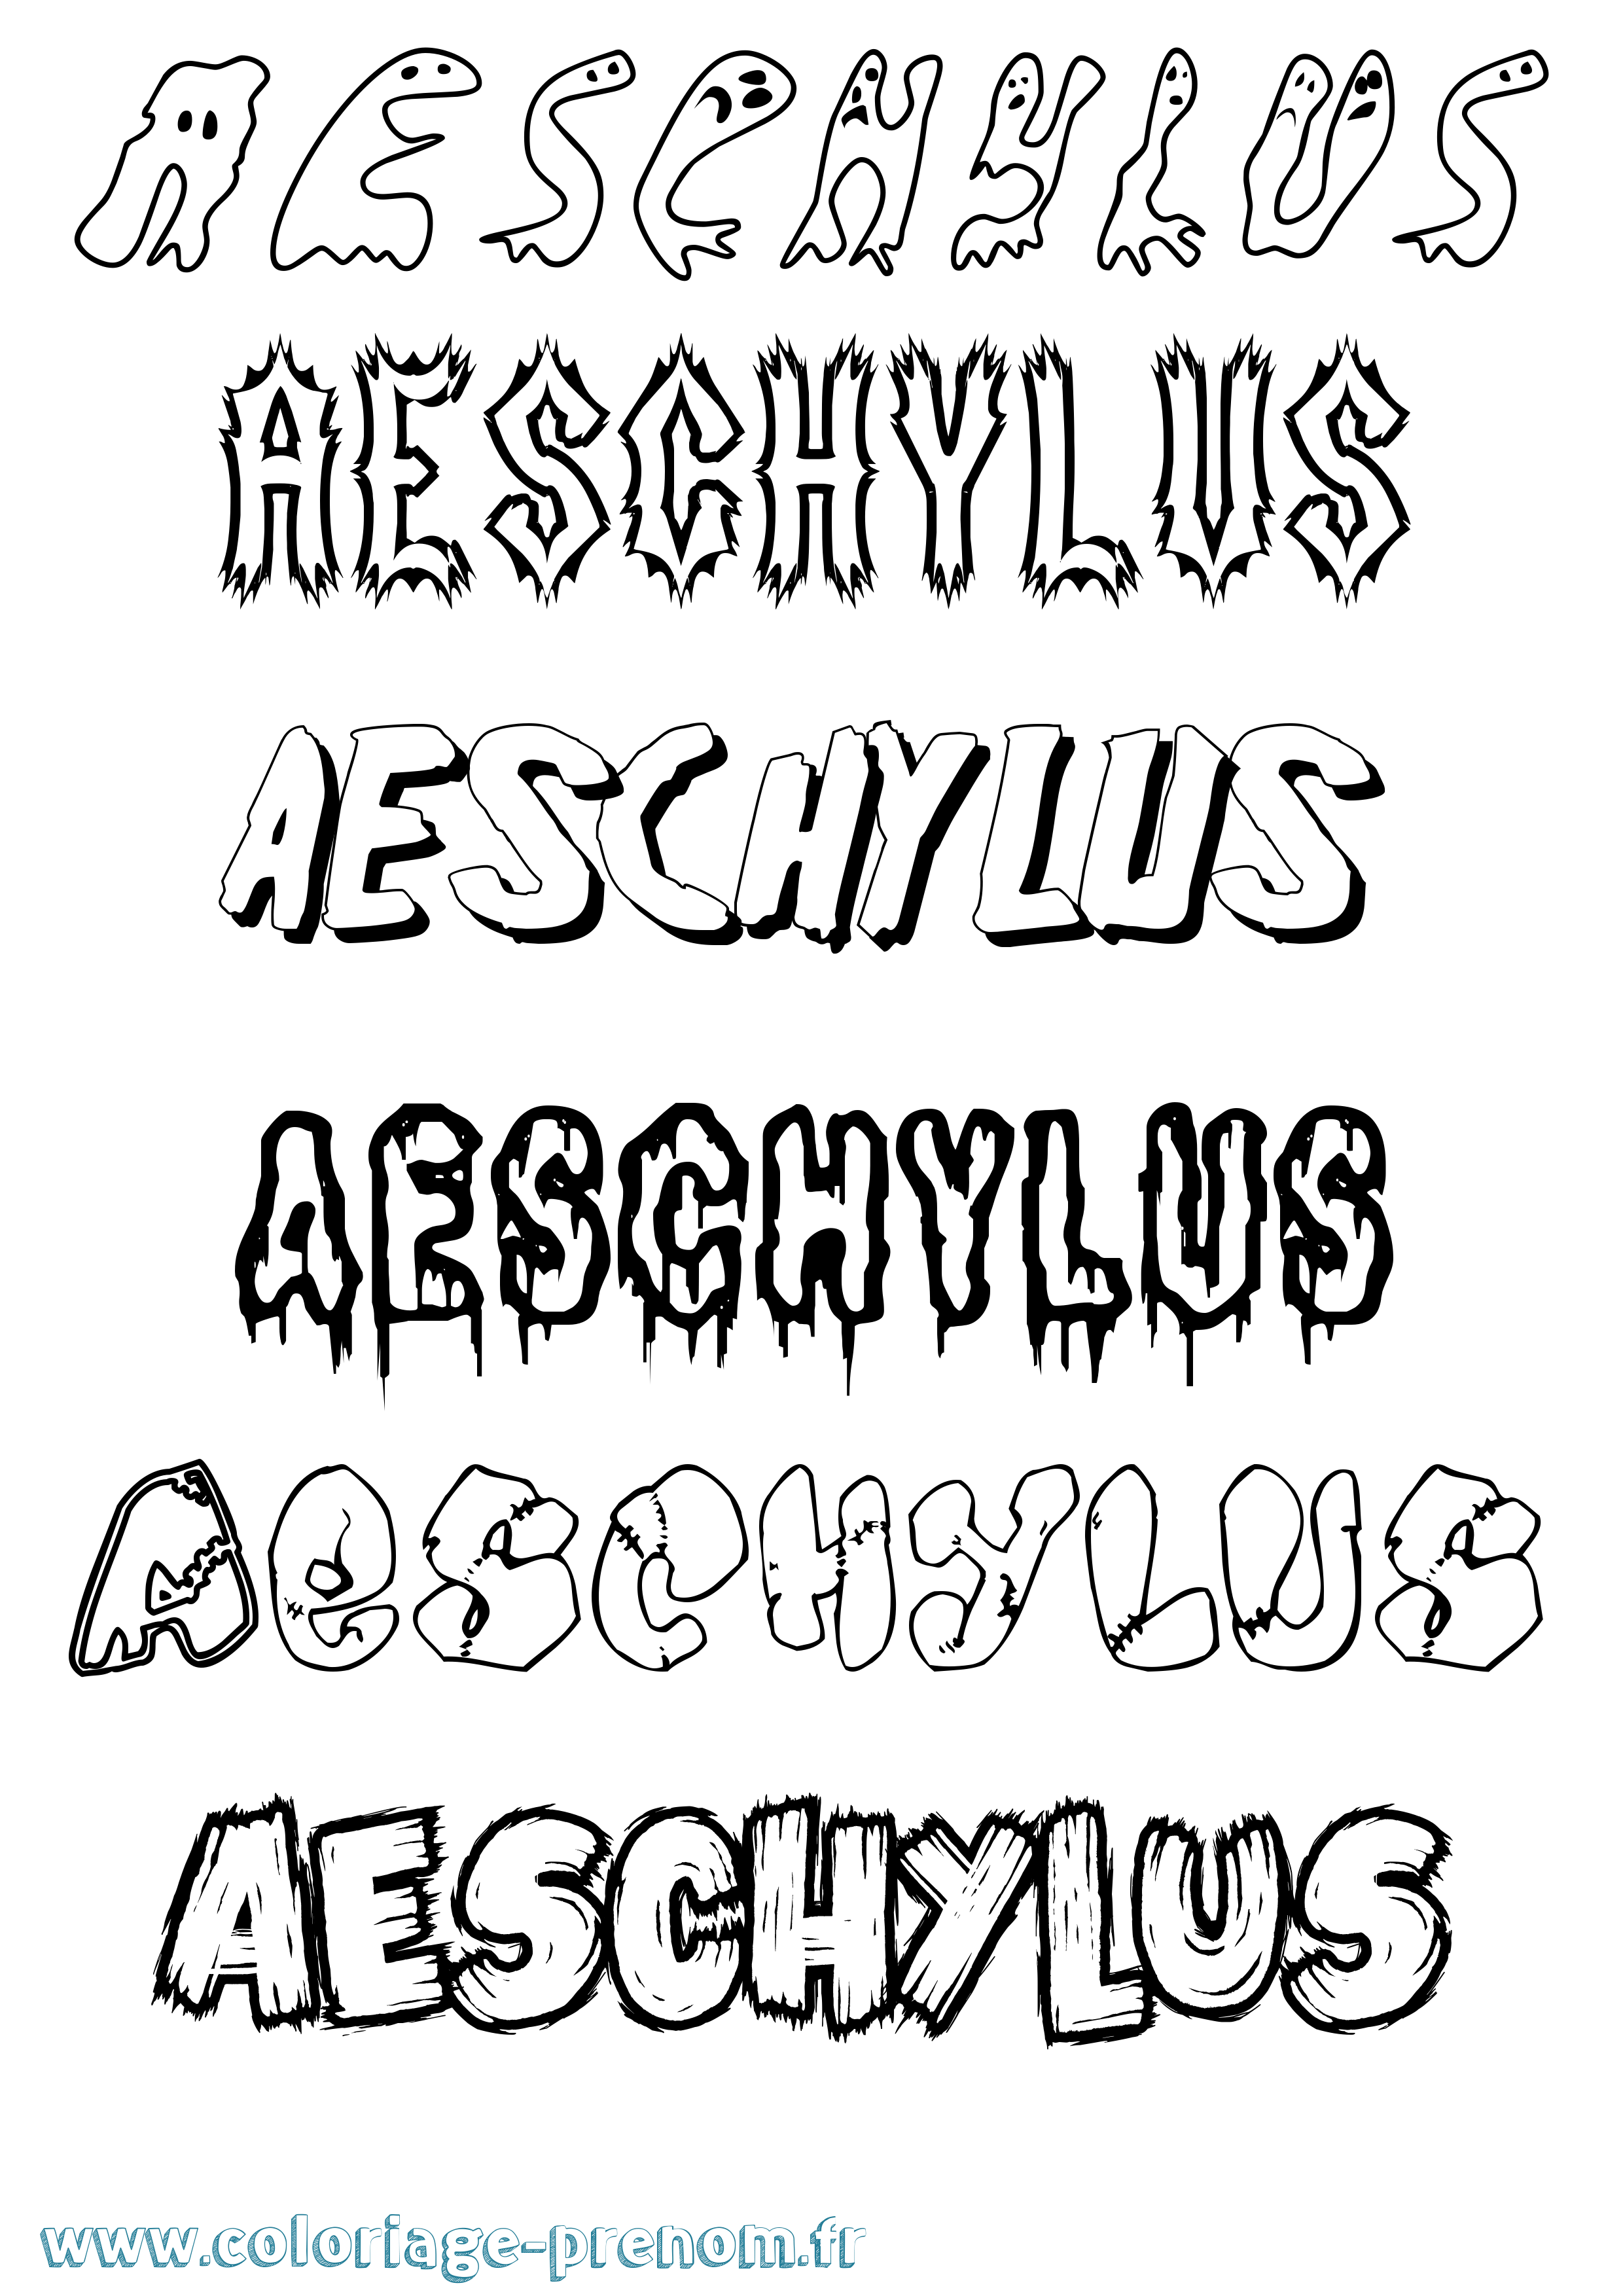 Coloriage prénom Aeschylus Frisson